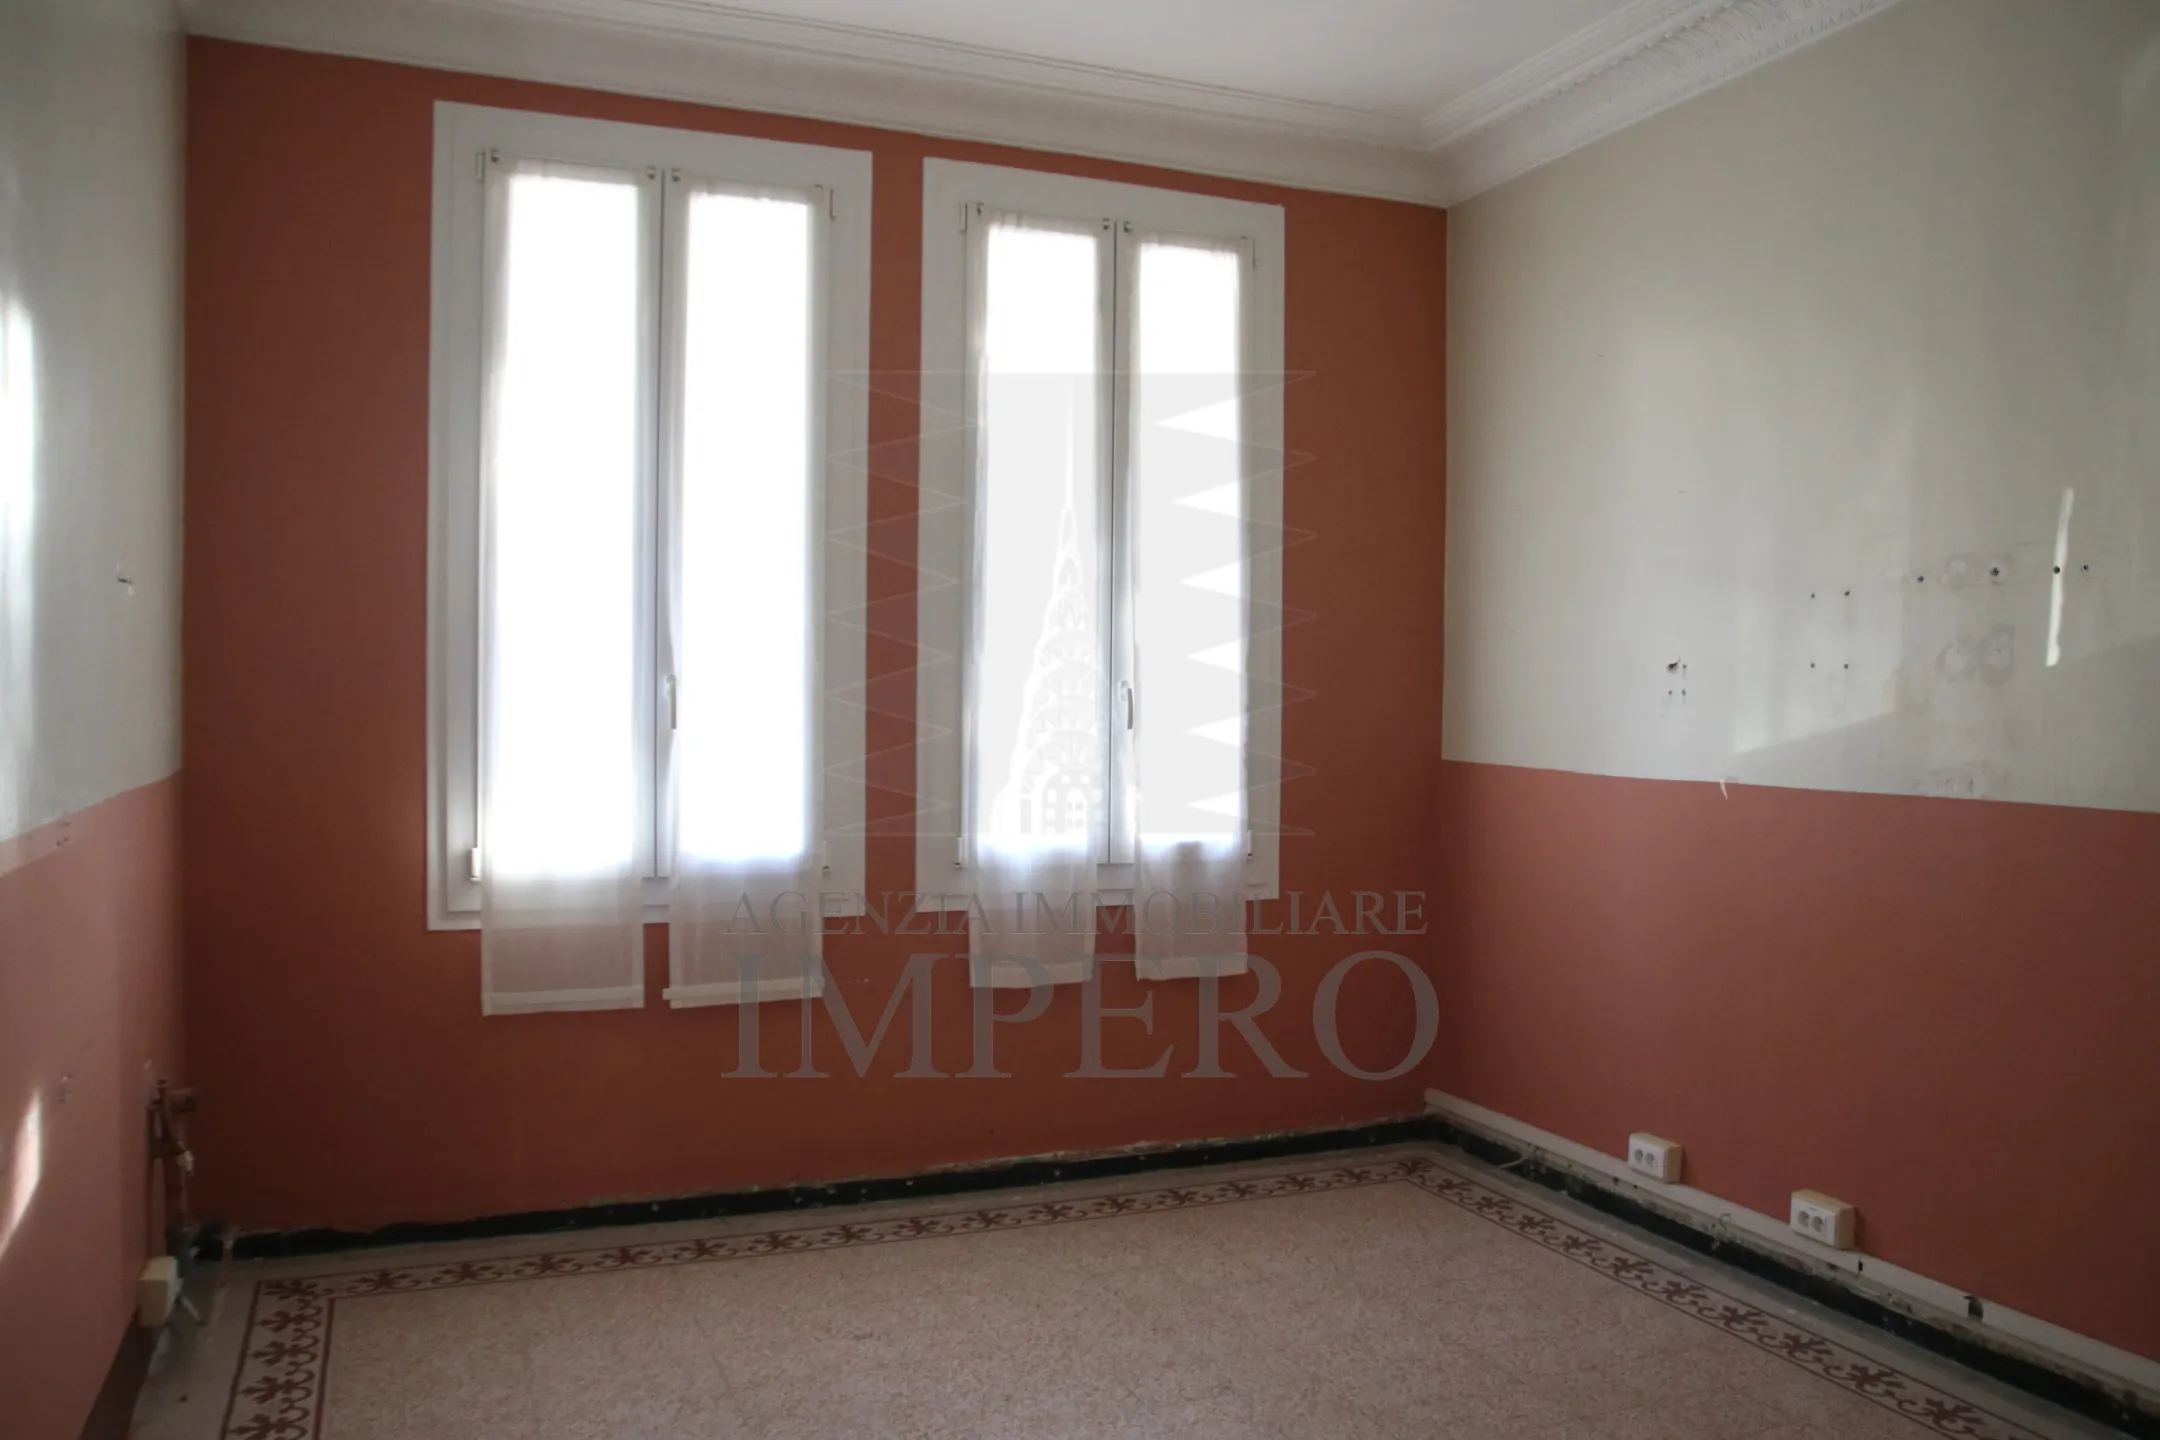 Immagine per Appartamento in vendita a Ventimiglia via Vittorio Veneto